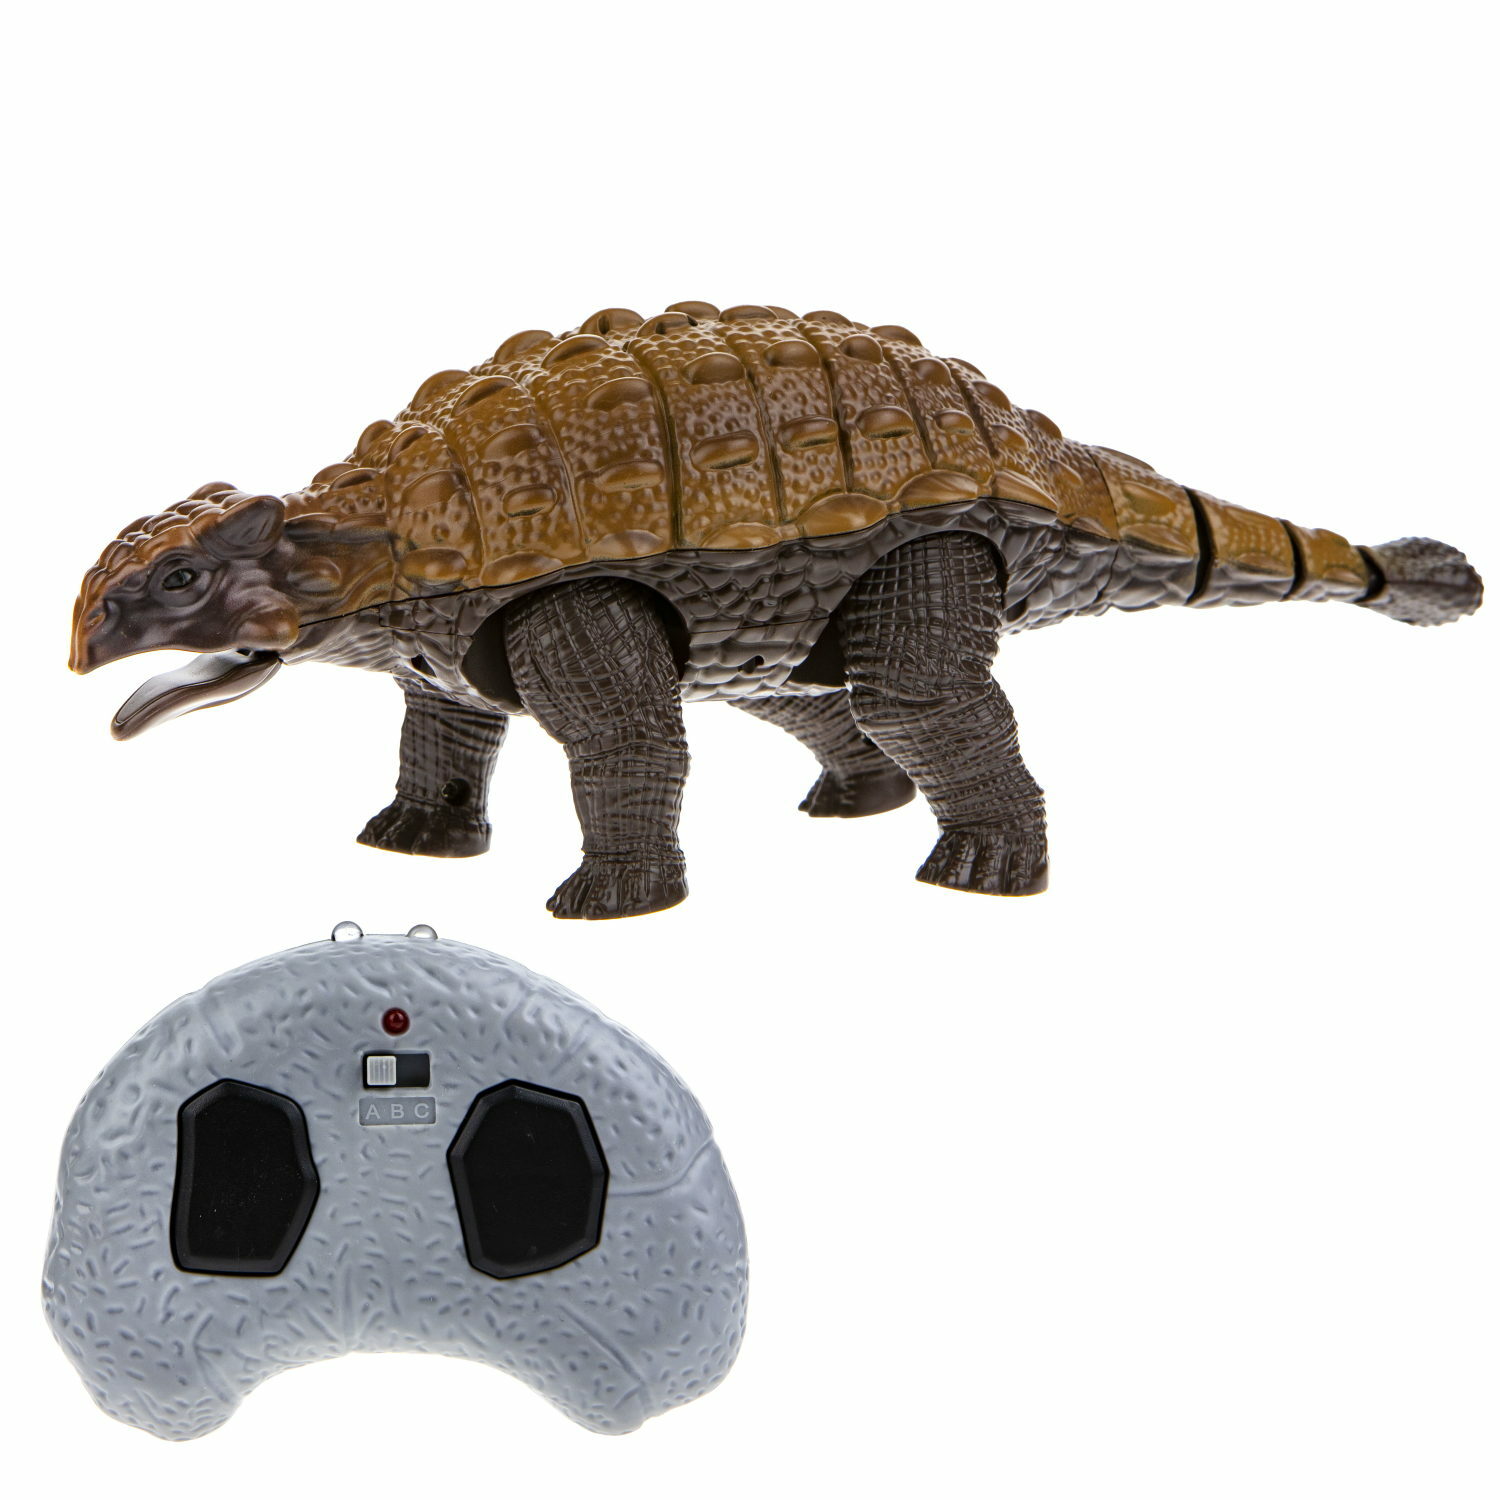 Интерактивная игрушка Robo Life Анкилозавр с пультом ДУ со звуковыми световыми и эффектами движения - фото 2